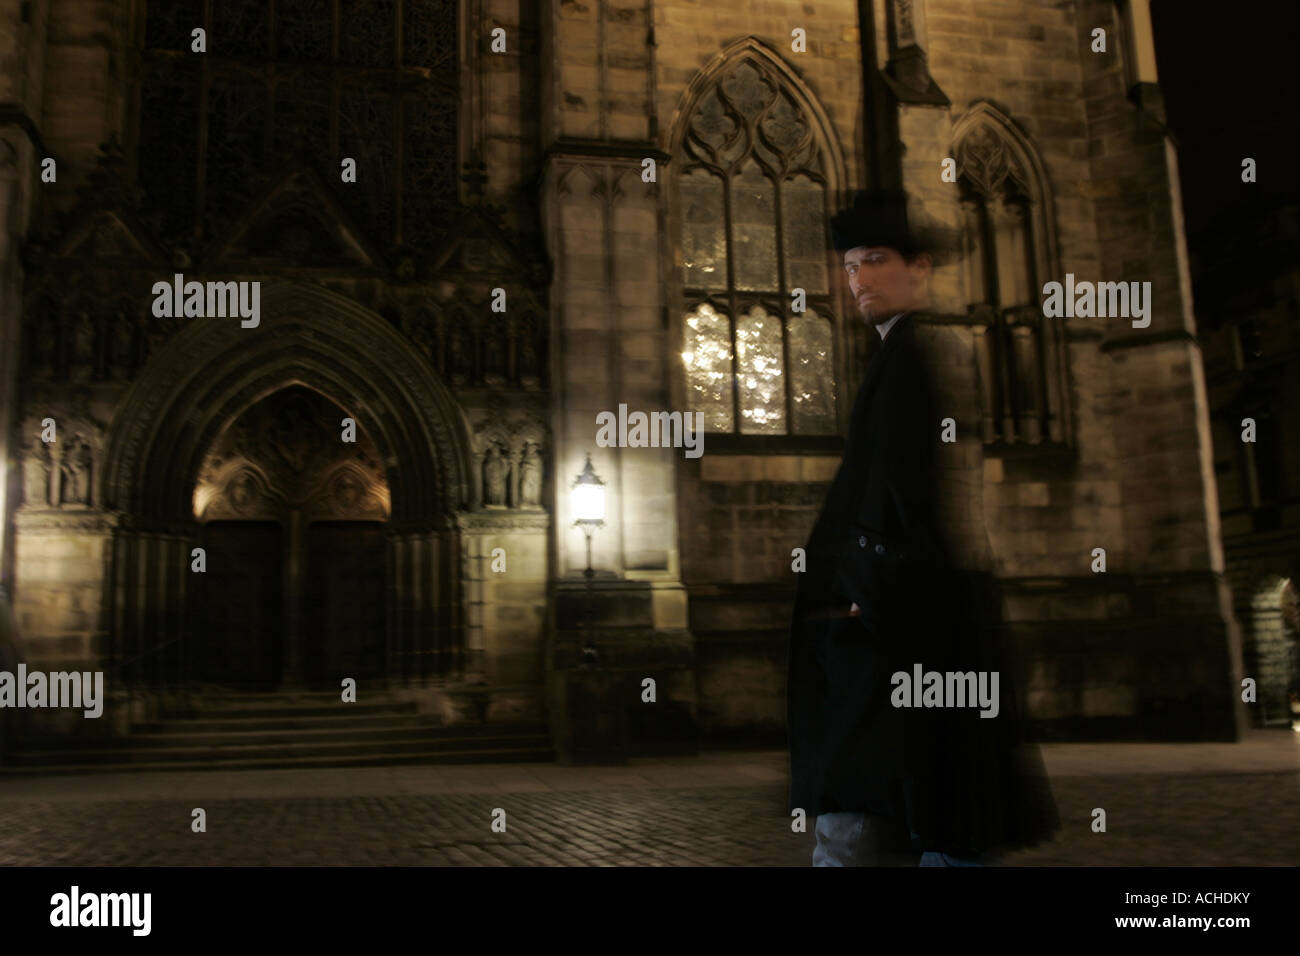 La figure fantomatique d'un homme en passant devant une église de nuit. Banque D'Images